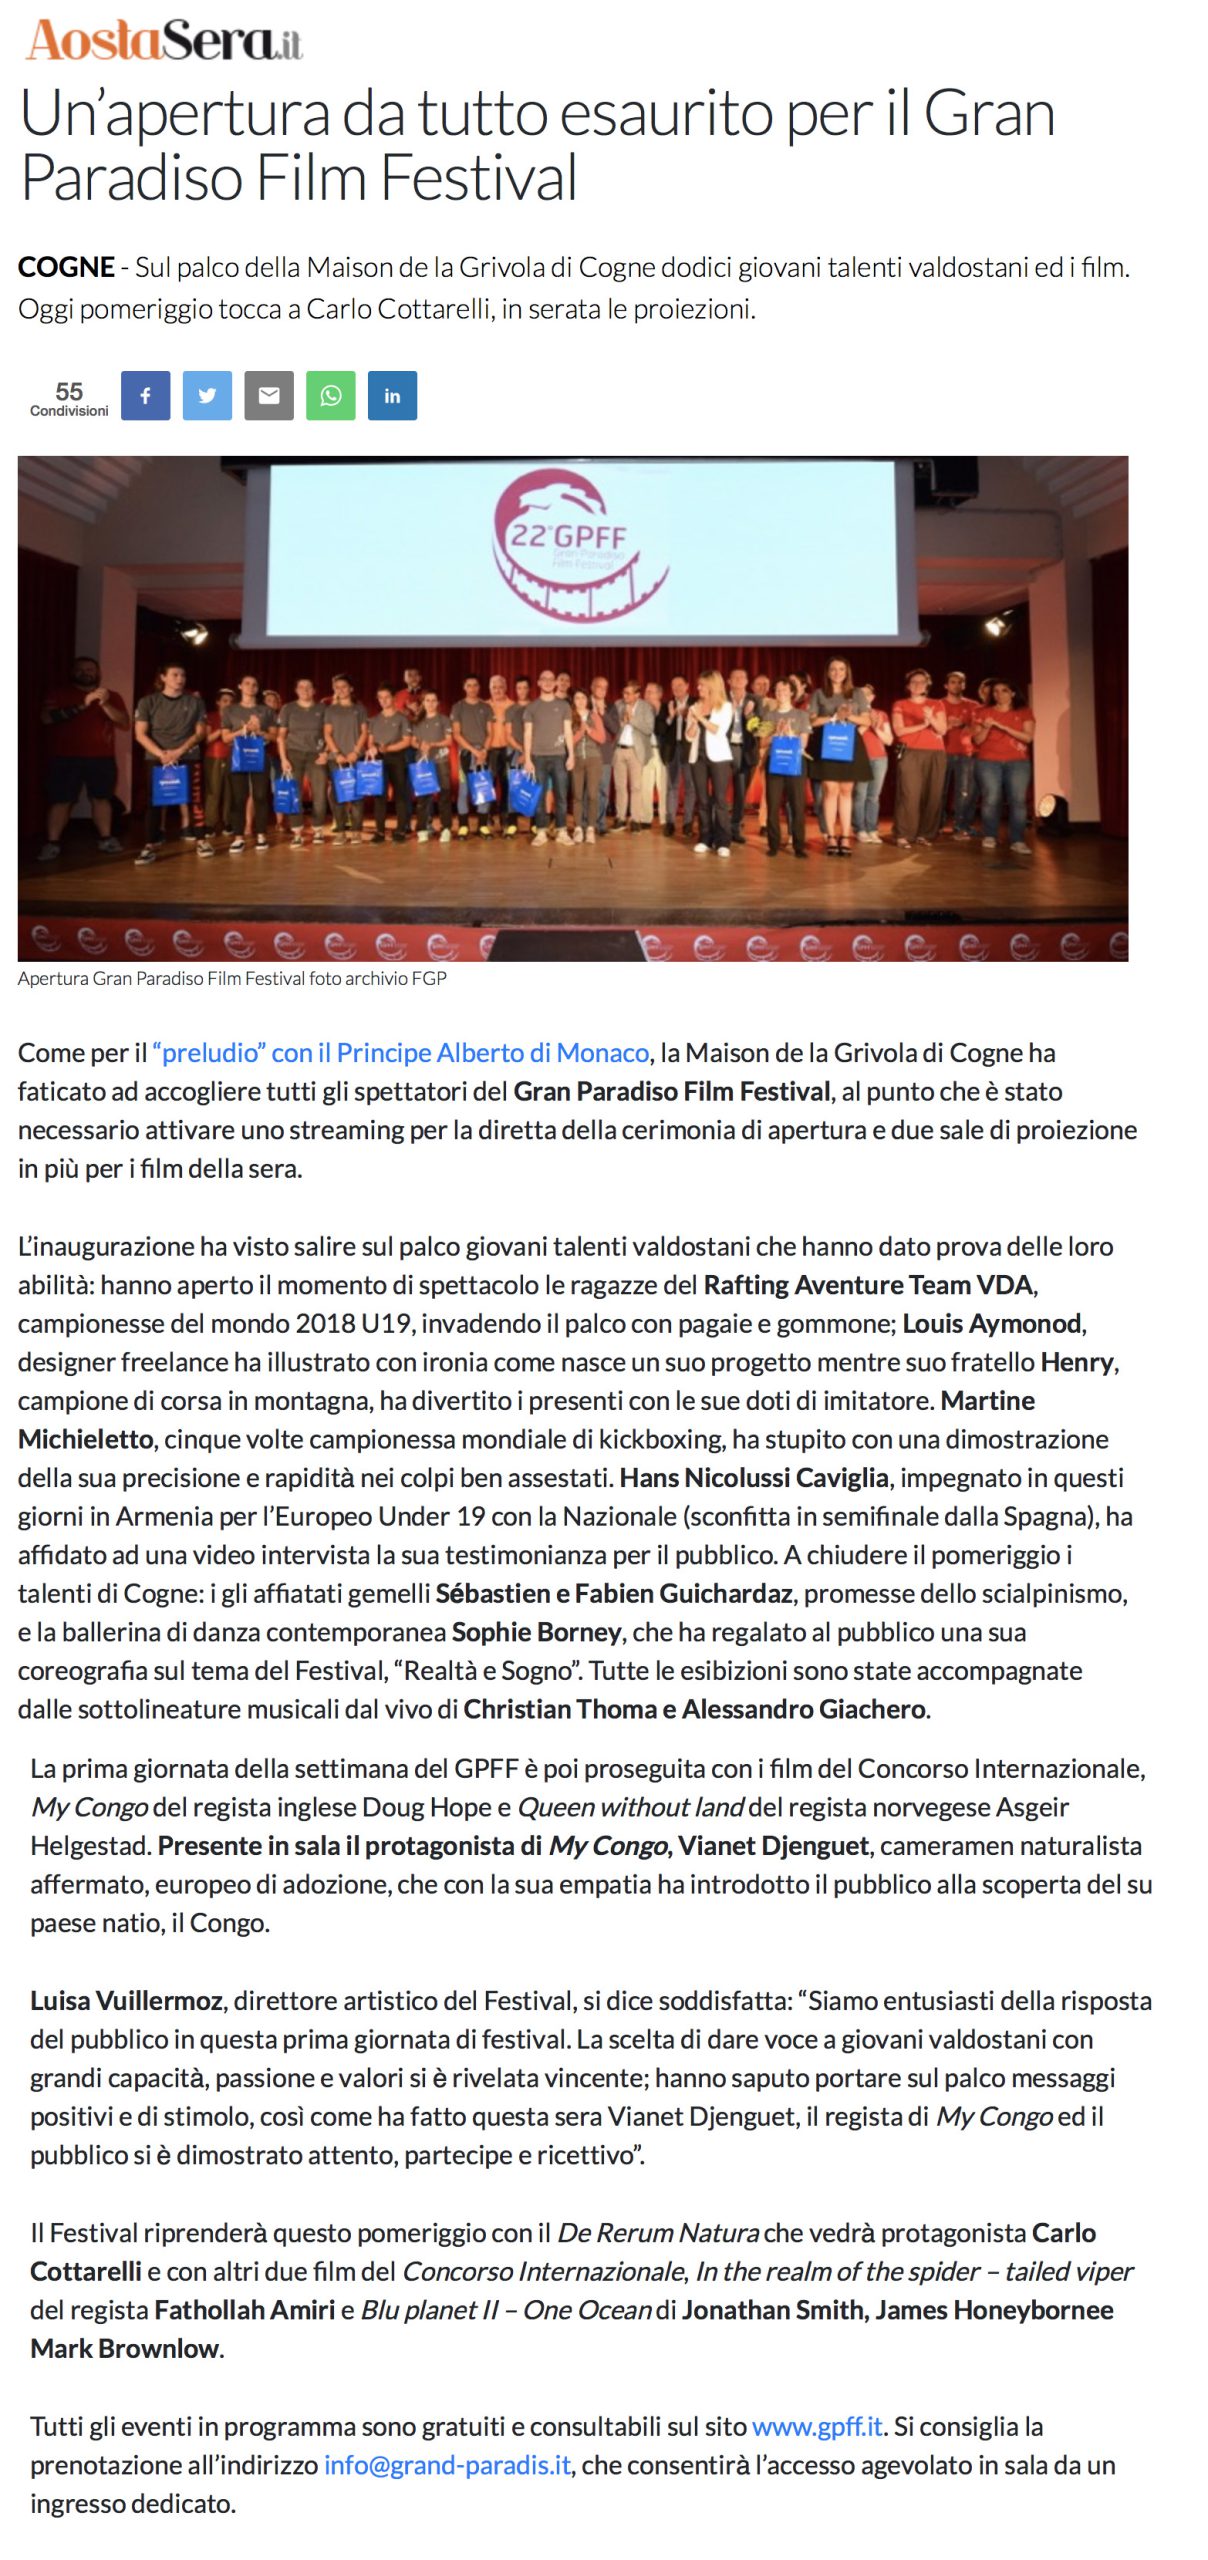 2019-07-22 AostaSera - Un apertura da tutto esaurito per il Gran Paradiso Film Festival